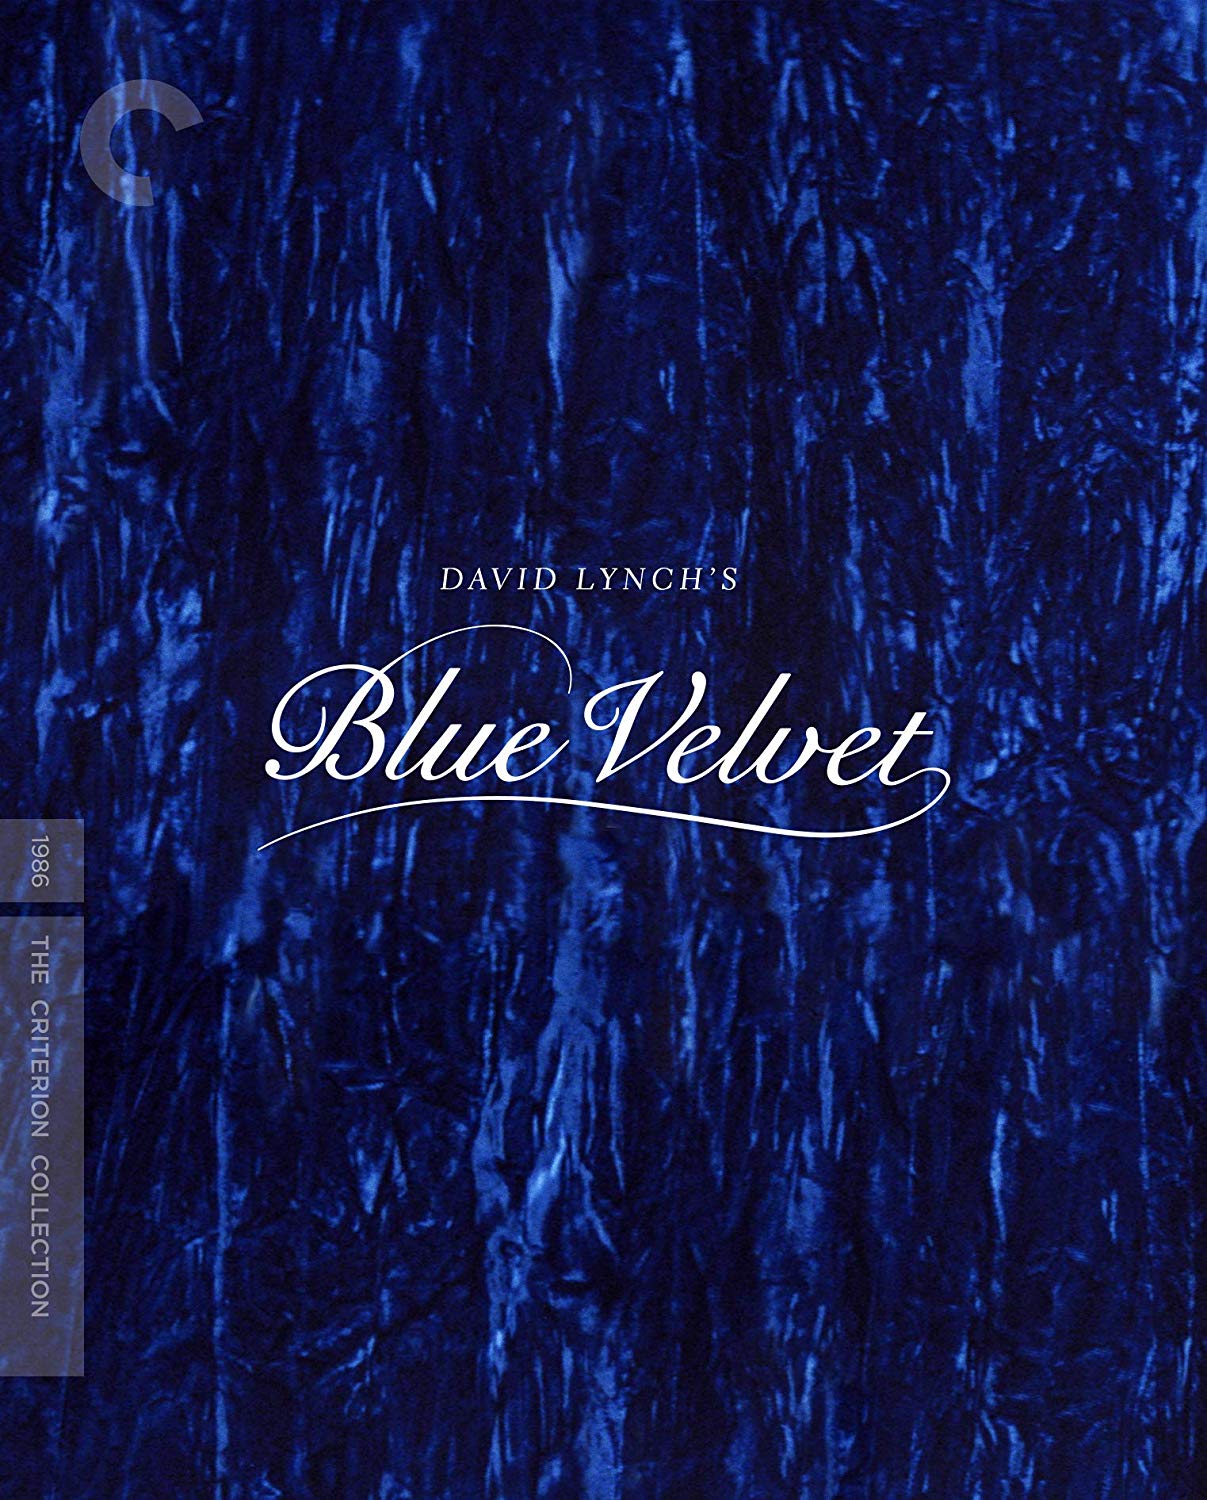 Blue Velvet Images  Free Download on Freepik